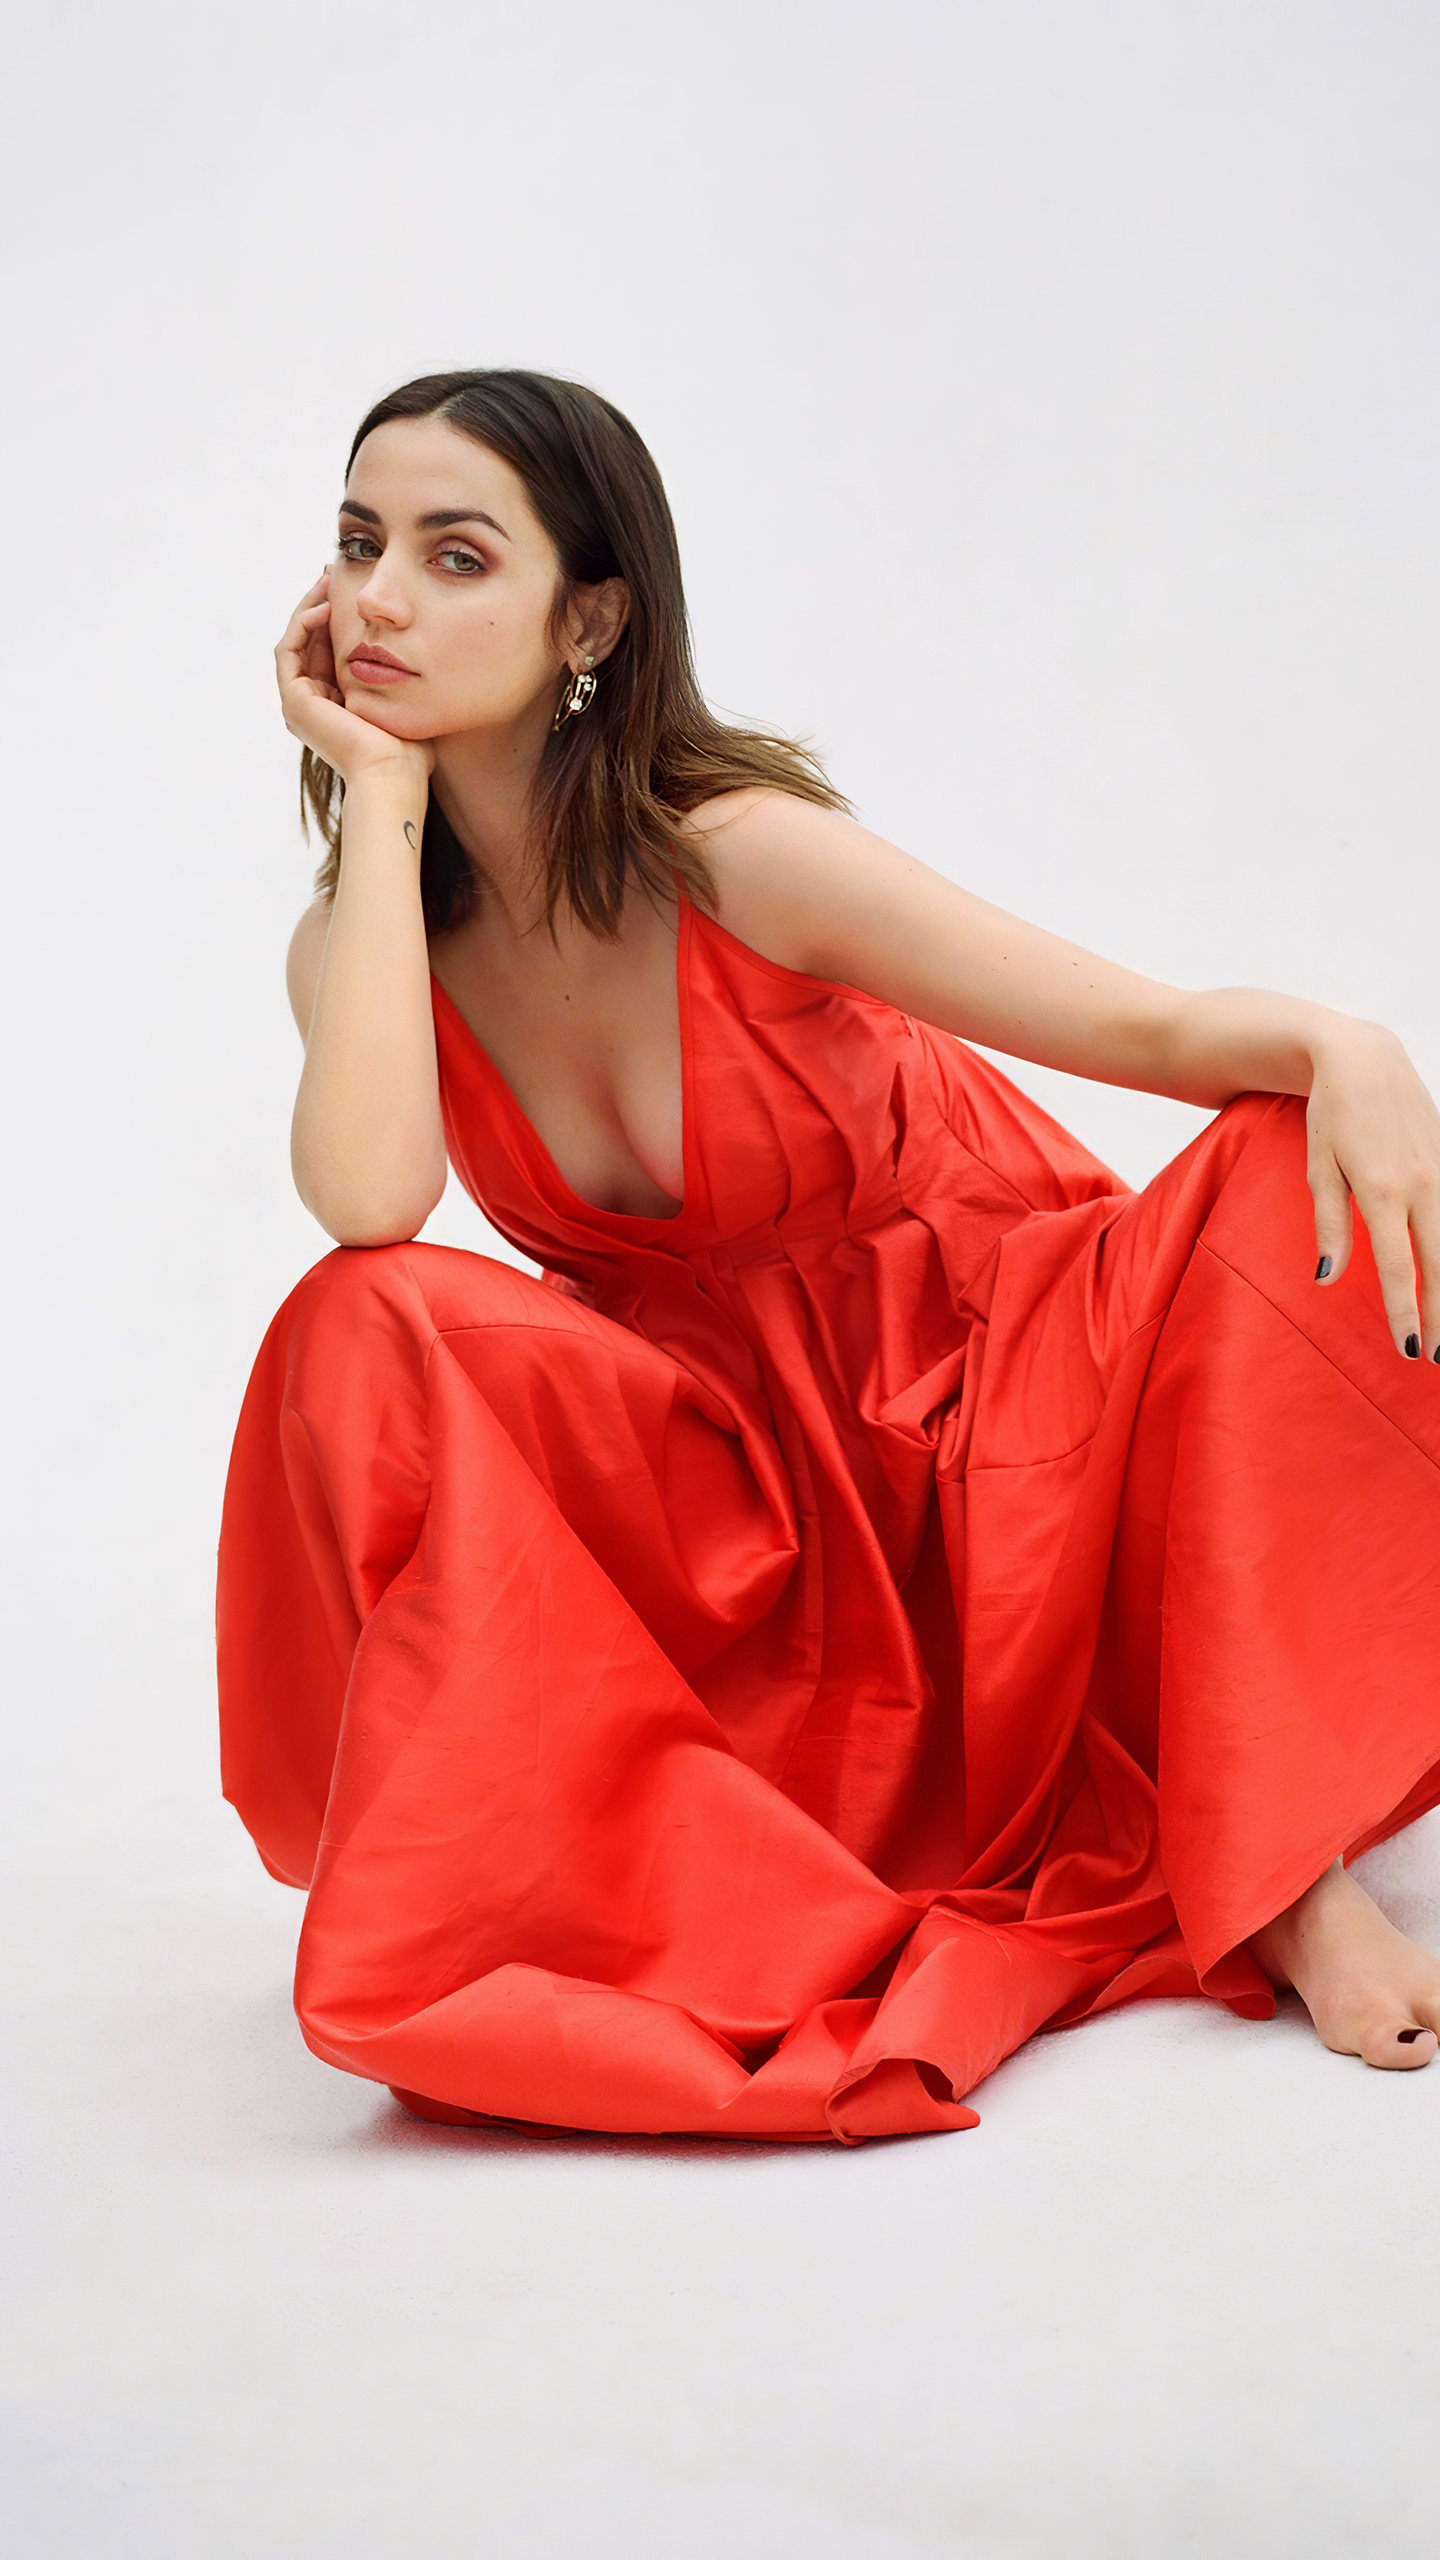 Ana de Armas in Red Dress Wallpapers